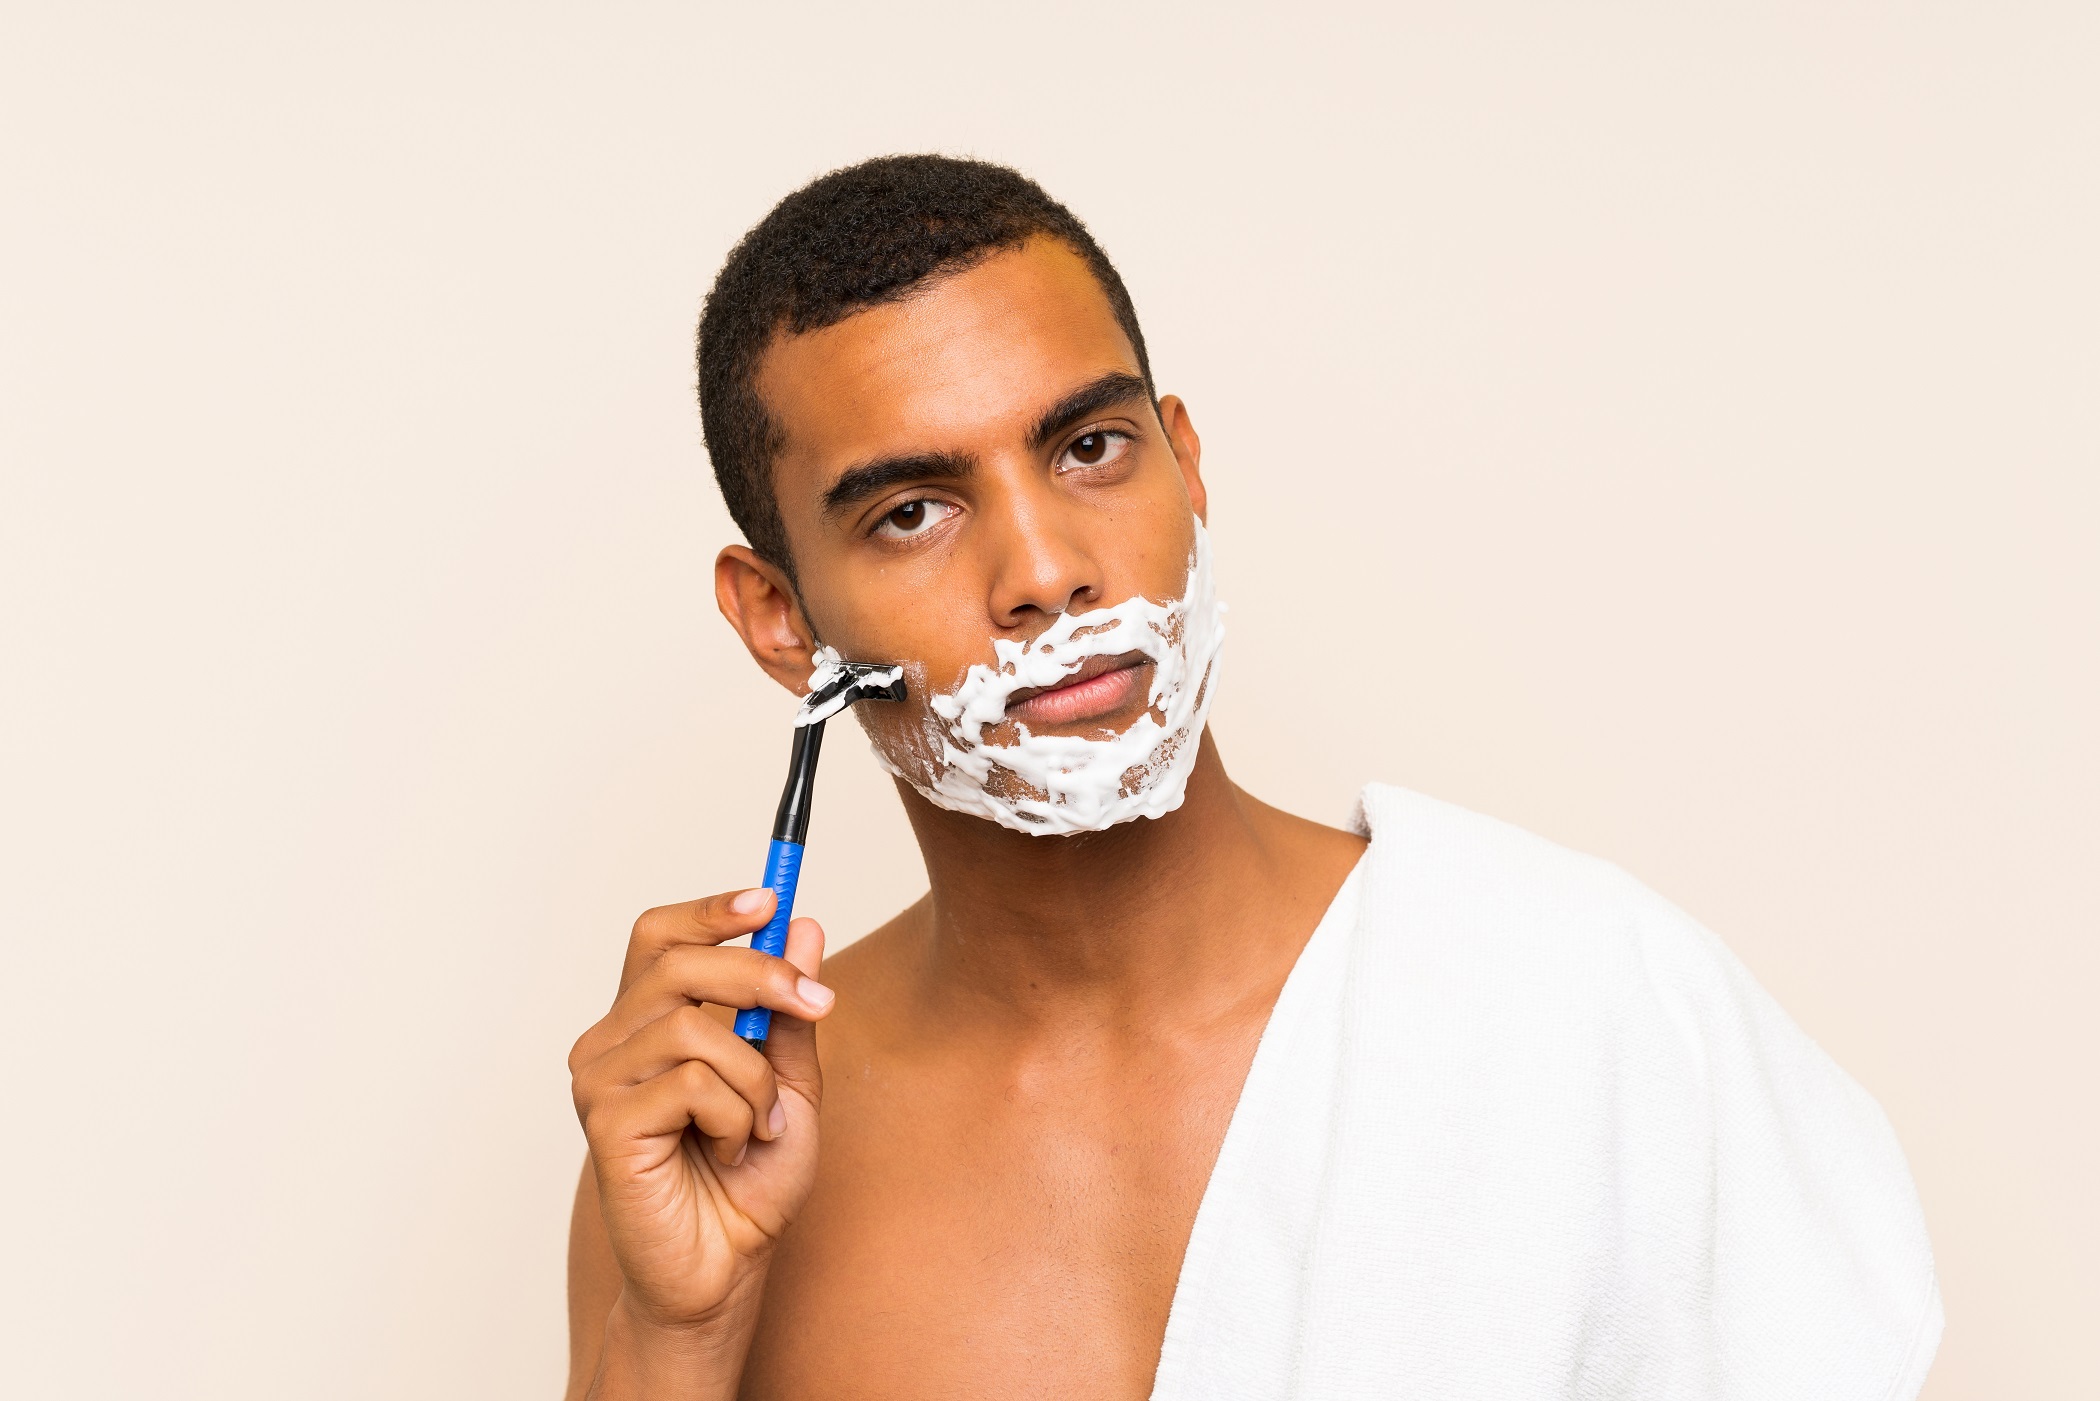 Men's Grooming Shaving